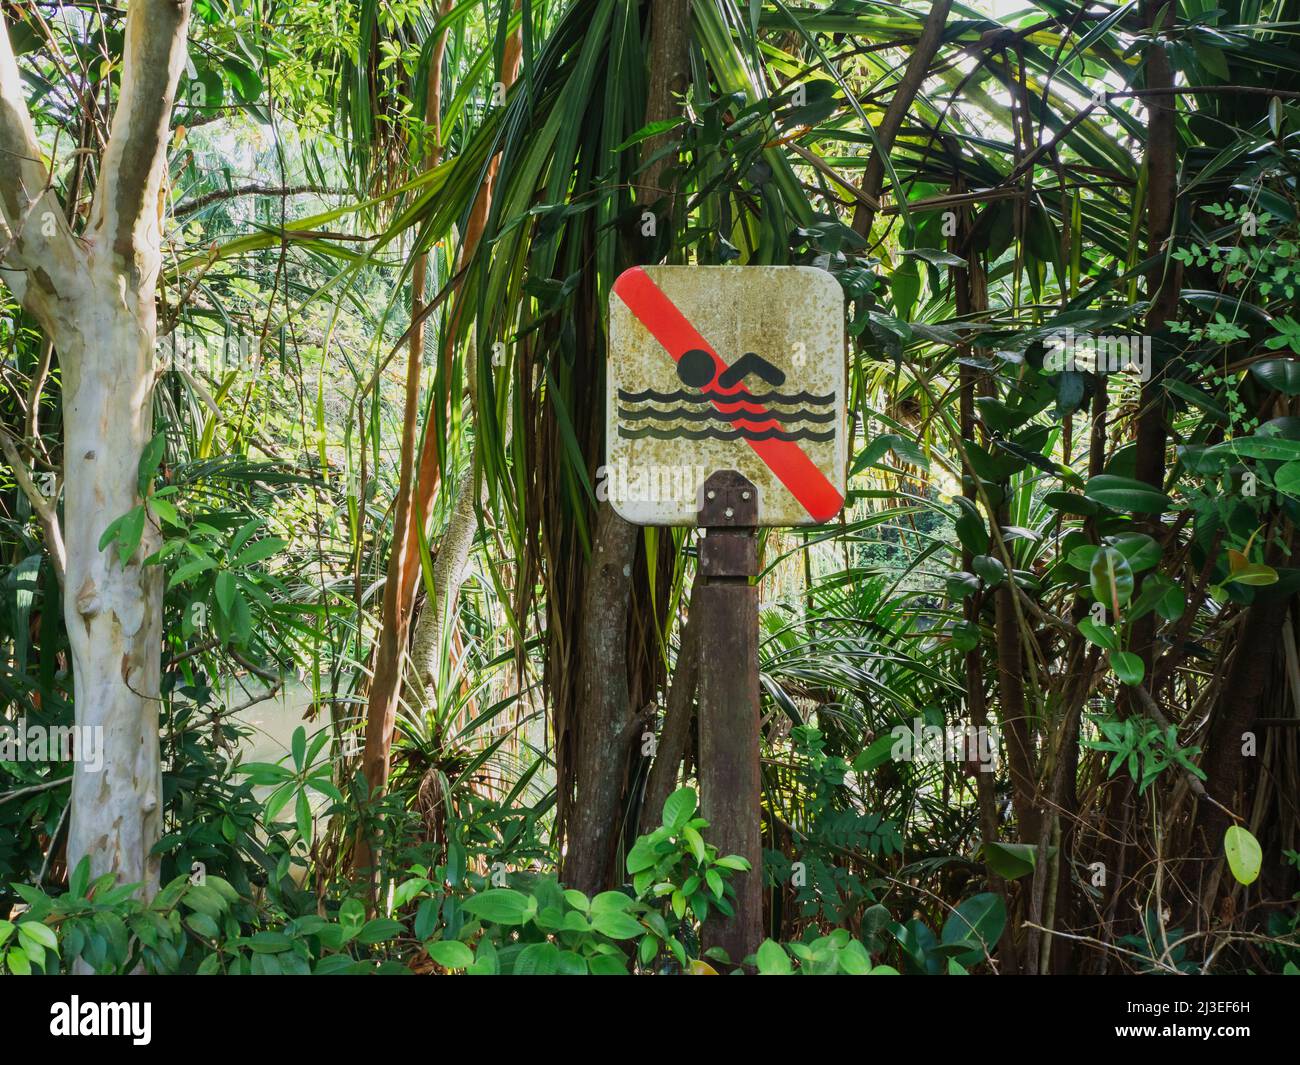 Un panneau de natation usé dans la forêt, près d'un étang. Signalisation de sécurité dans un parc naturel. Banque D'Images